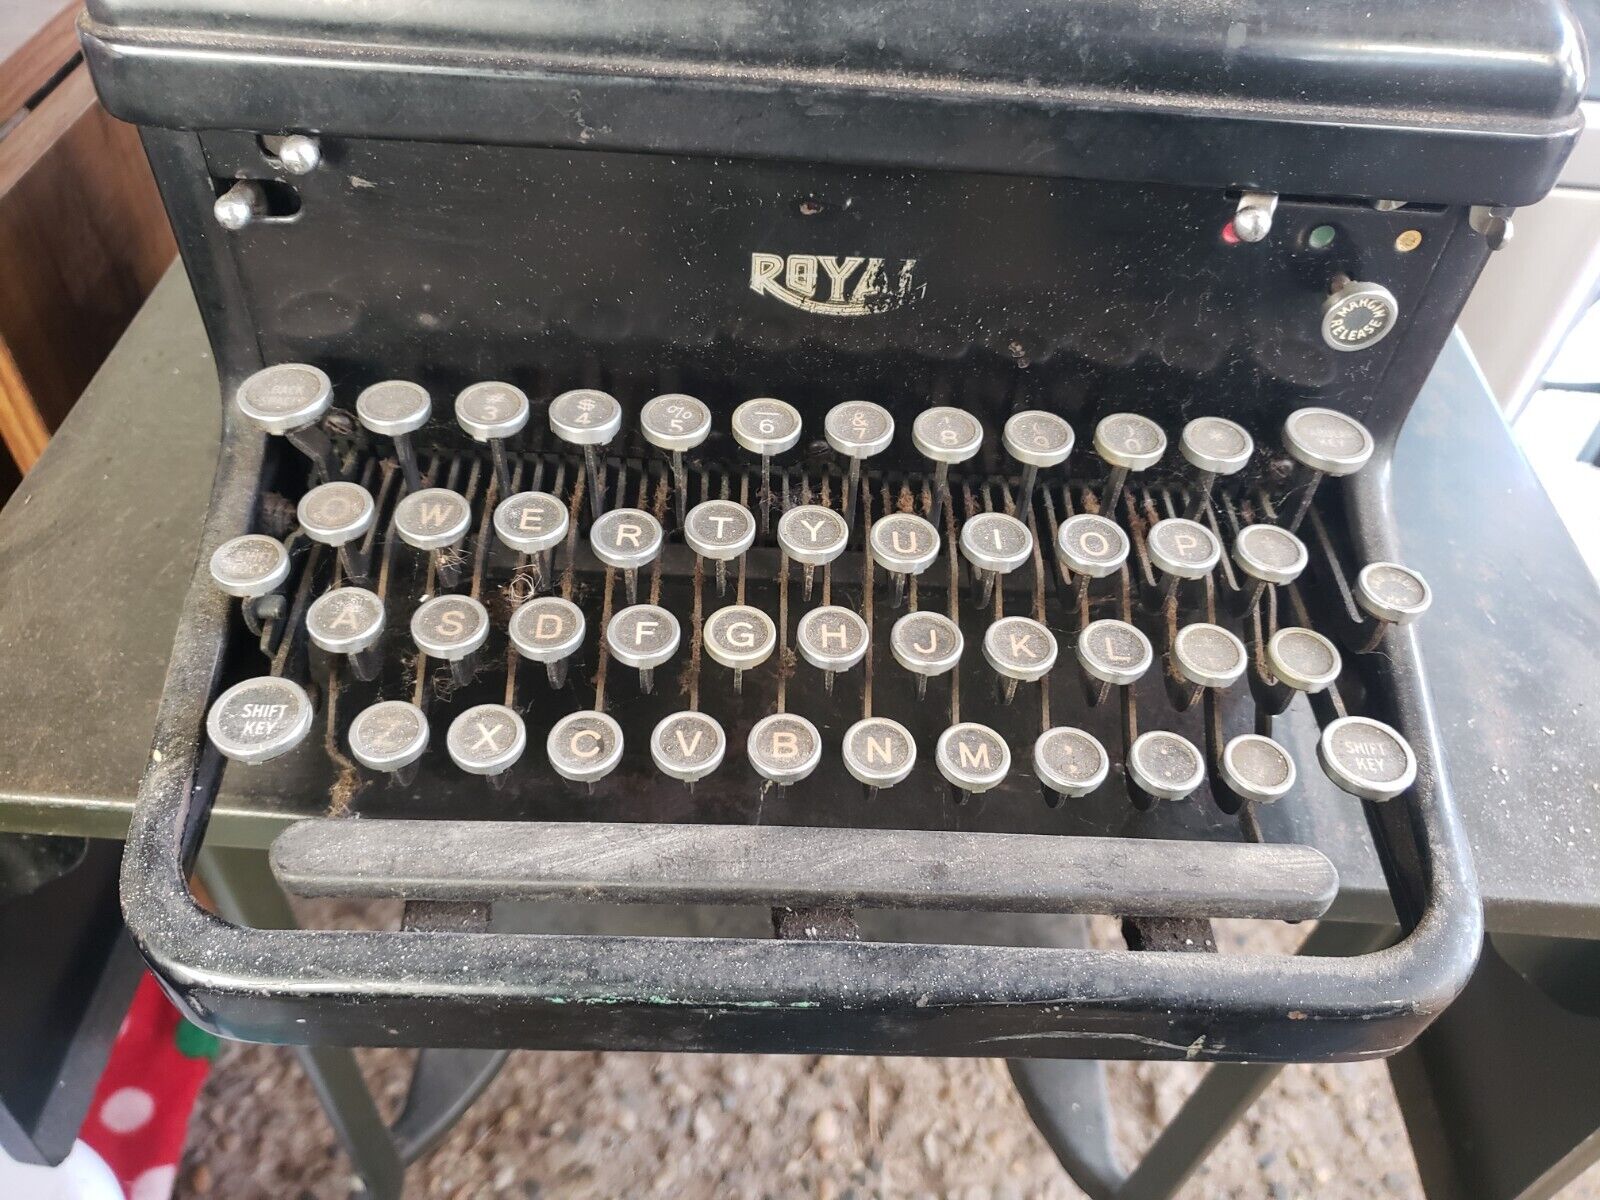 CLASSIC - Vintage (84yrs) 1937 ROYAL Manual Typewriter Serial # KHM 12-2012776